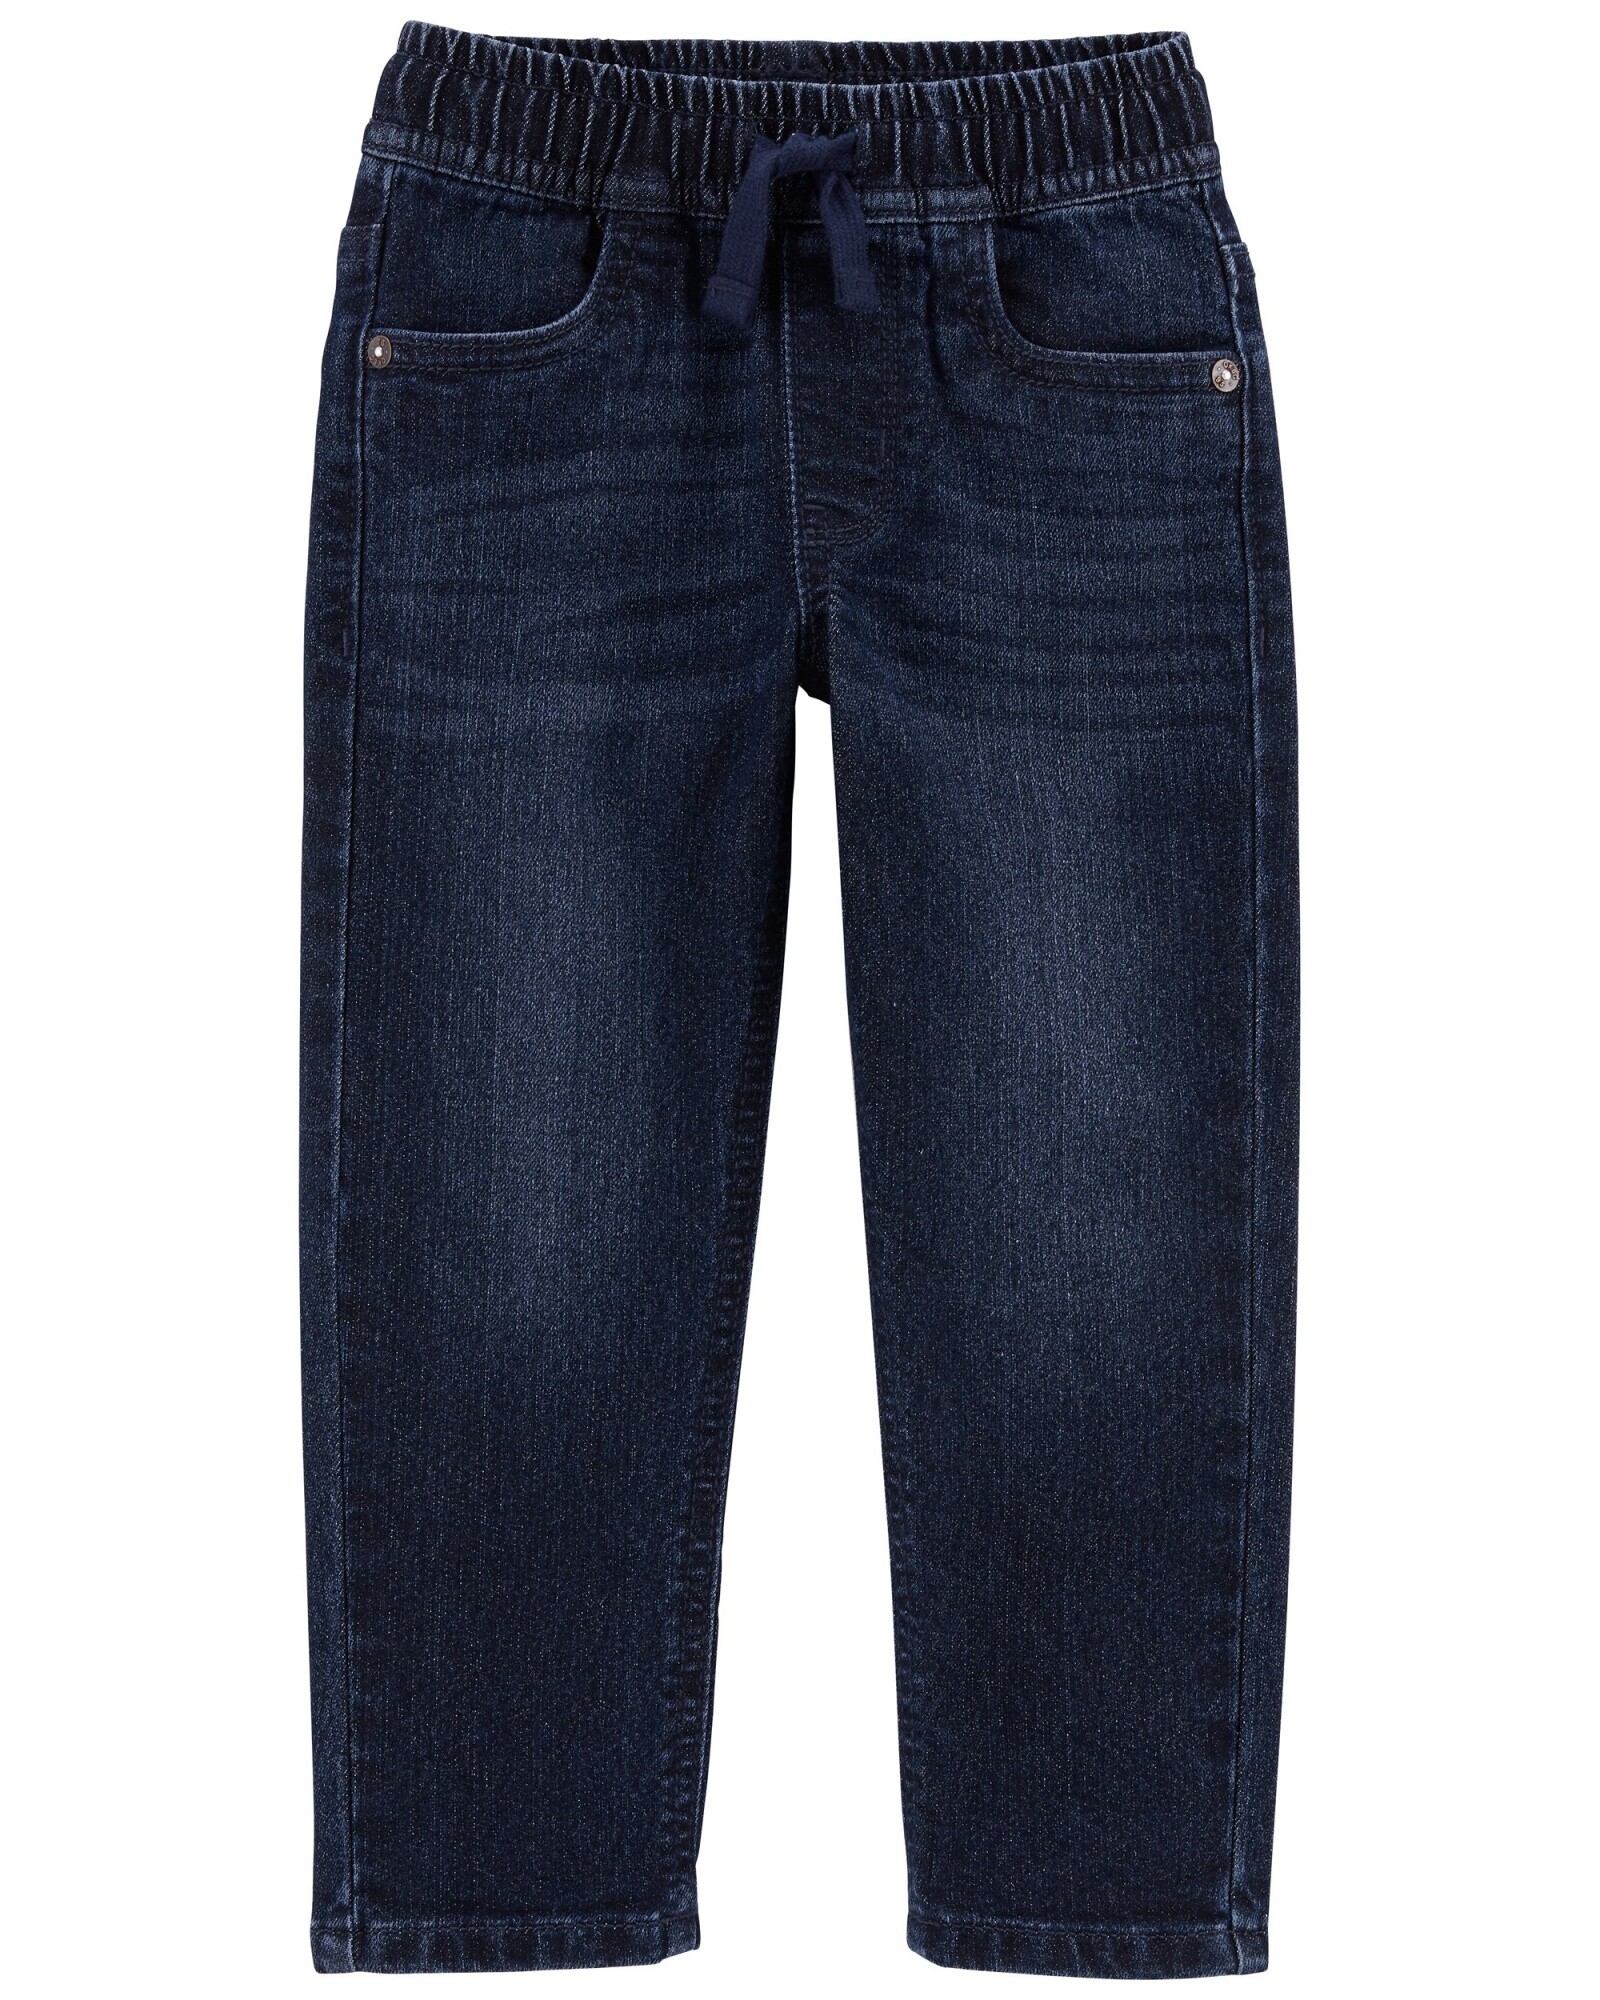 Pantalón jean cónico. Talles 2-5T Sin color